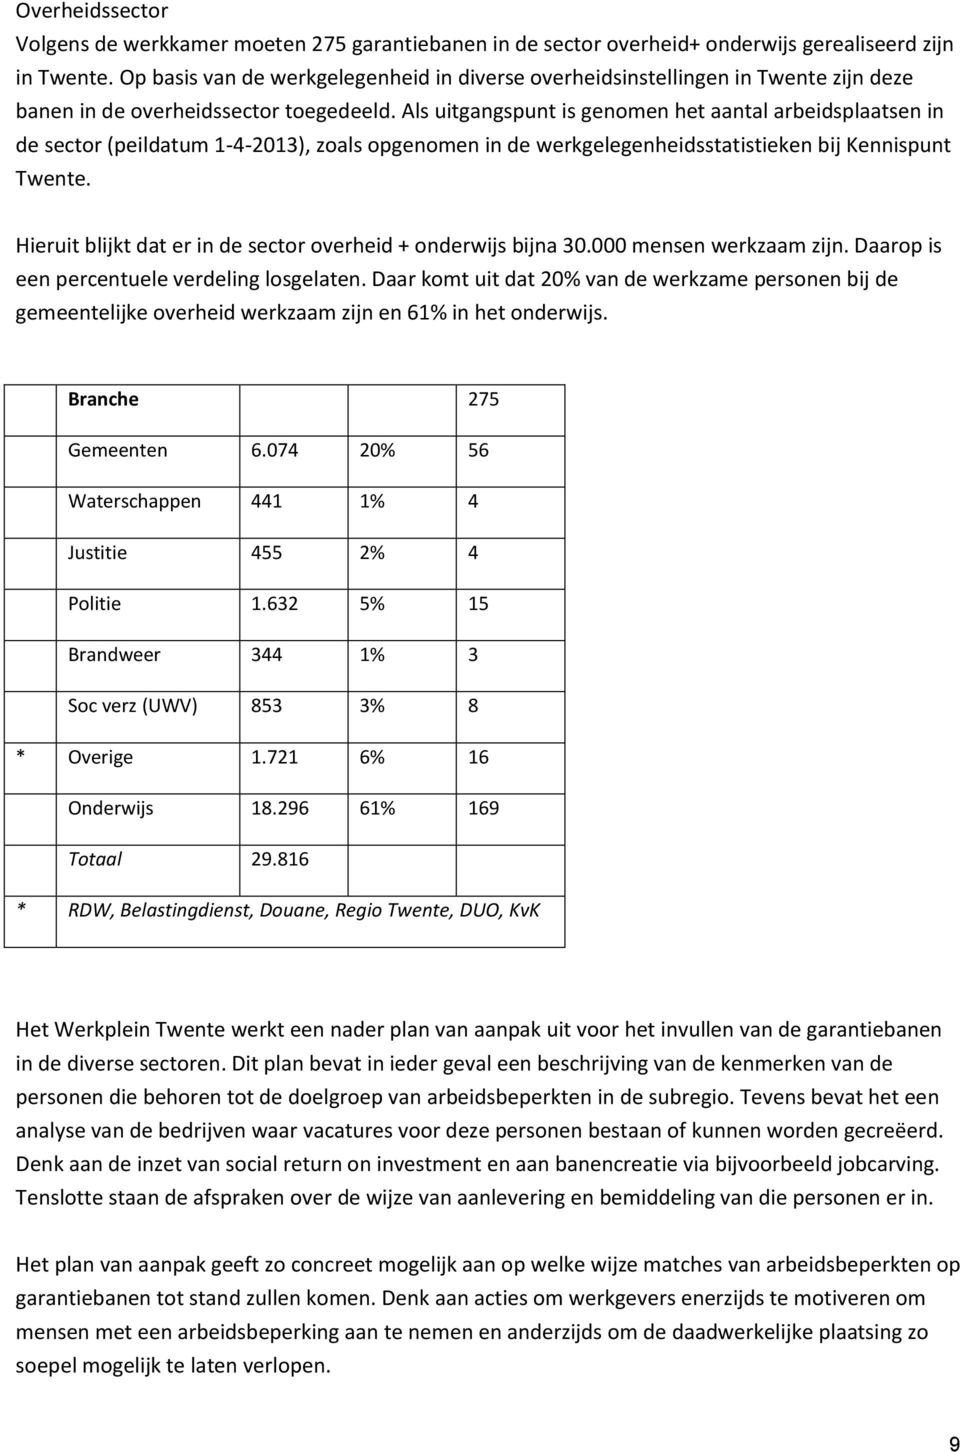 Als uitgangspunt is genomen het aantal arbeidsplaatsen in de sector (peildatum 1-4-2013), zoals opgenomen in de werkgelegenheidsstatistieken bij Kennispunt Twente.